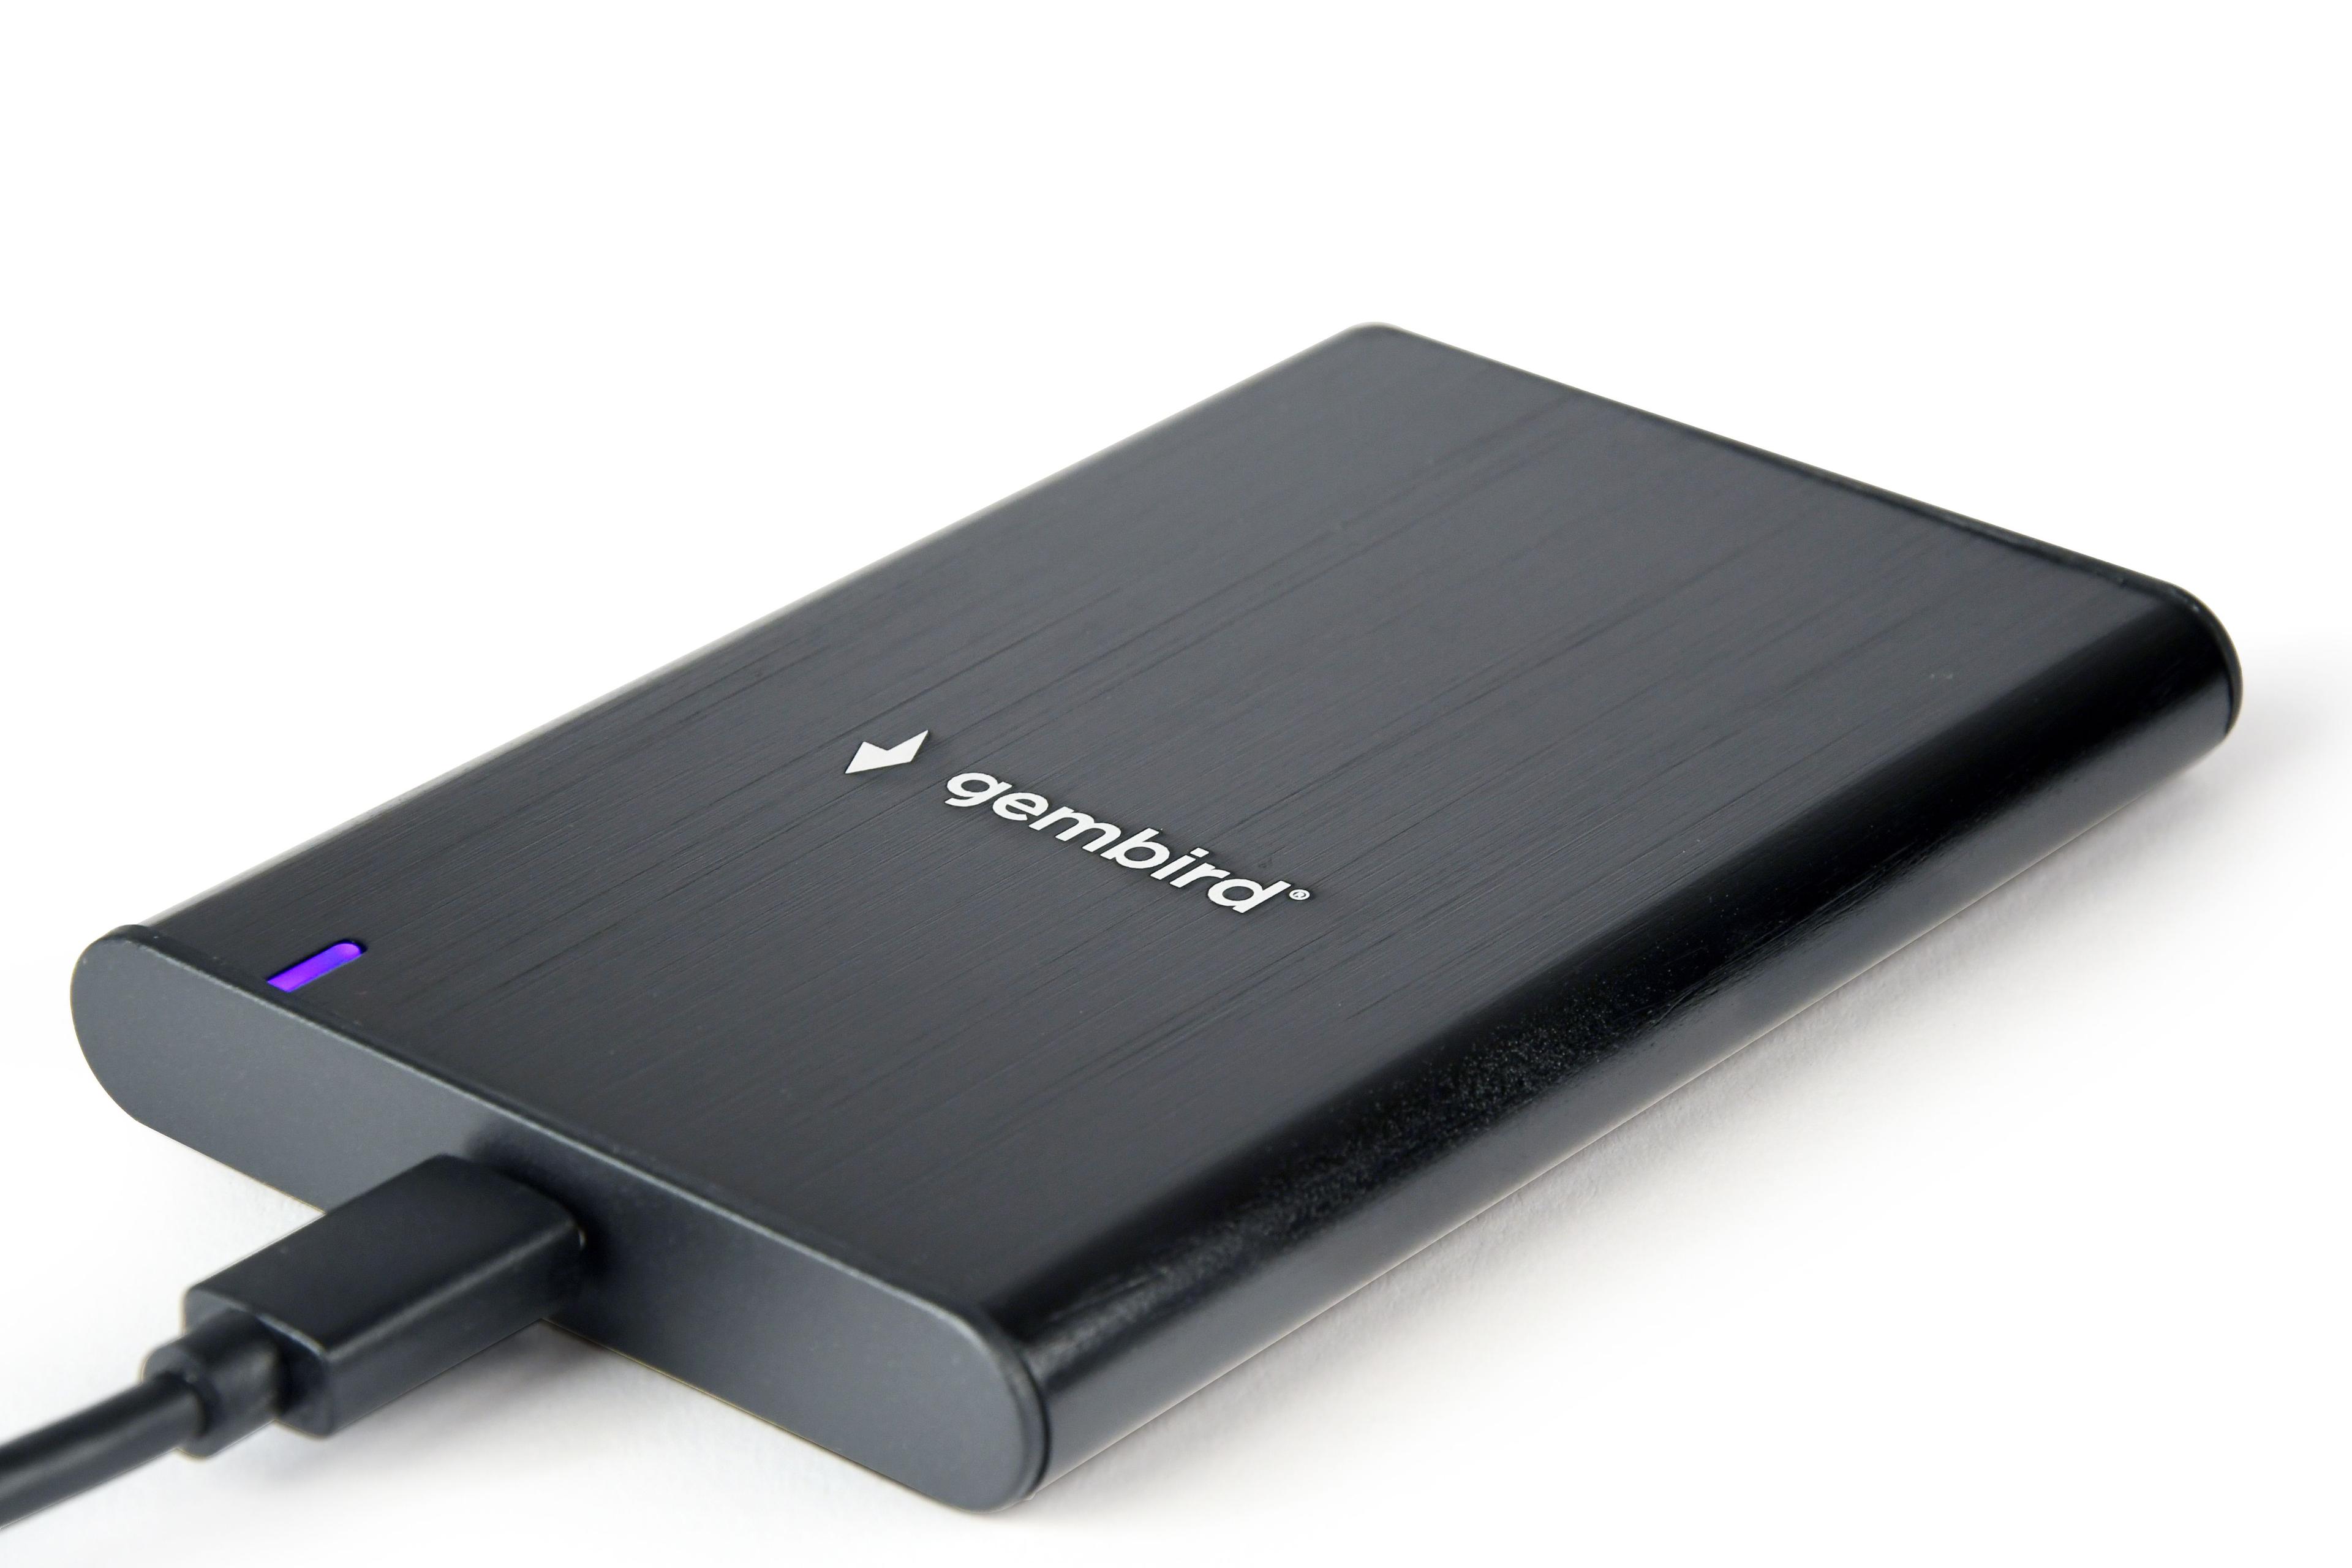 GEMBIRD OBUDOWA USB 3.1 NA DYSK HDD/SSD 2.5'' SATA SZCZOTKOWANE ALUMINIUM, CZARNA